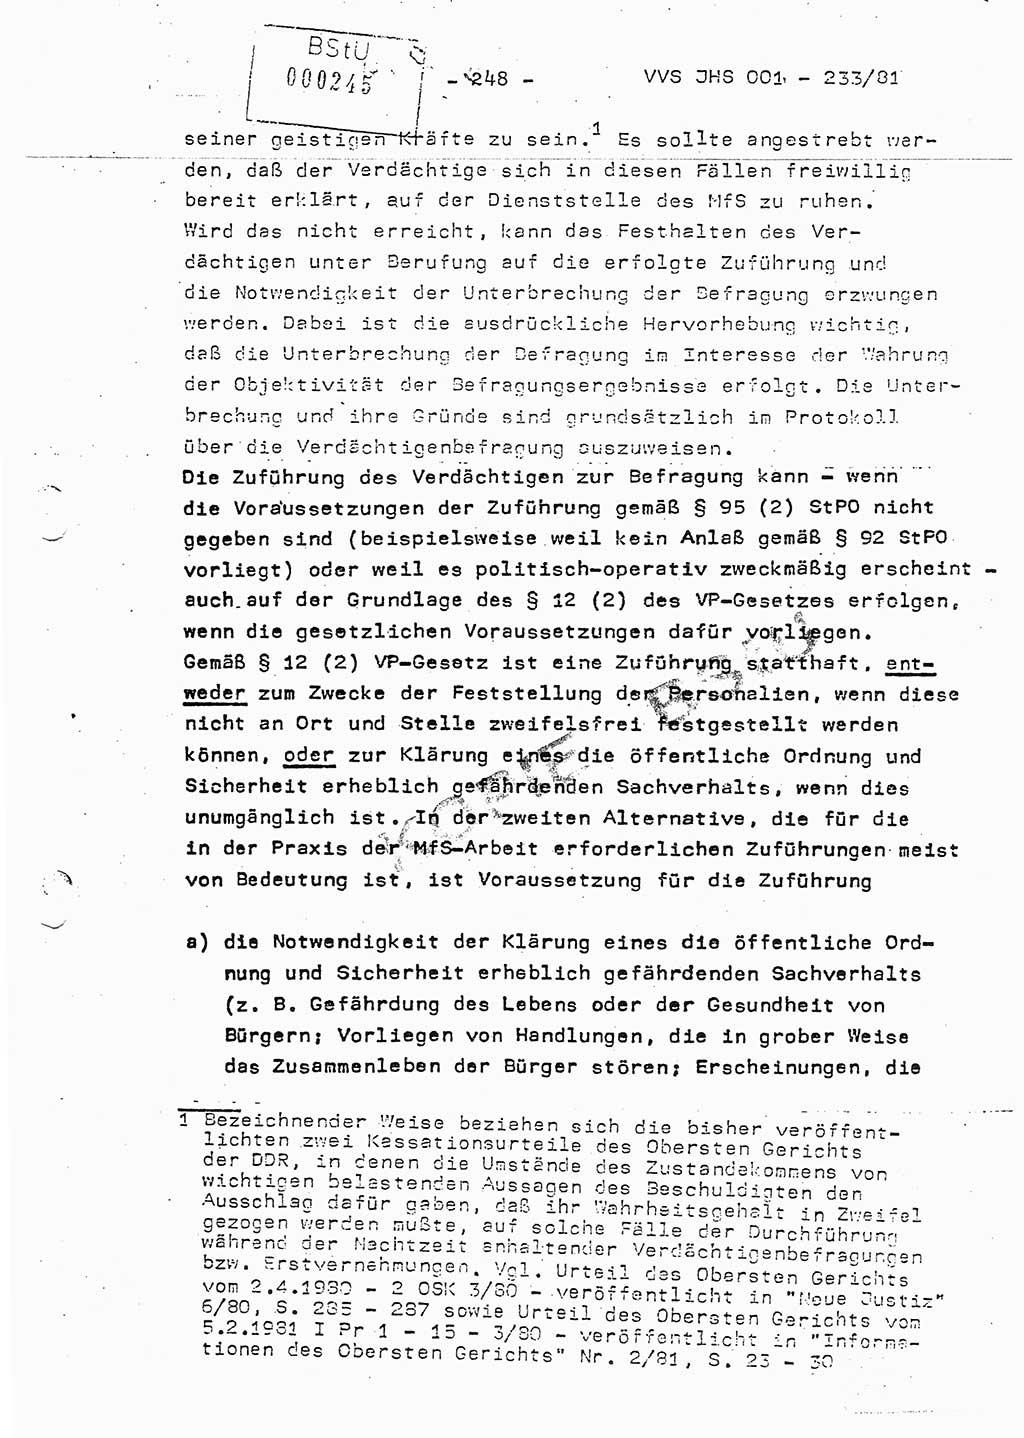 Dissertation Oberstleutnant Horst Zank (JHS), Oberstleutnant Dr. Karl-Heinz Knoblauch (JHS), Oberstleutnant Gustav-Adolf Kowalewski (HA Ⅸ), Oberstleutnant Wolfgang Plötner (HA Ⅸ), Ministerium für Staatssicherheit (MfS) [Deutsche Demokratische Republik (DDR)], Juristische Hochschule (JHS), Vertrauliche Verschlußsache (VVS) o001-233/81, Potsdam 1981, Blatt 248 (Diss. MfS DDR JHS VVS o001-233/81 1981, Bl. 248)